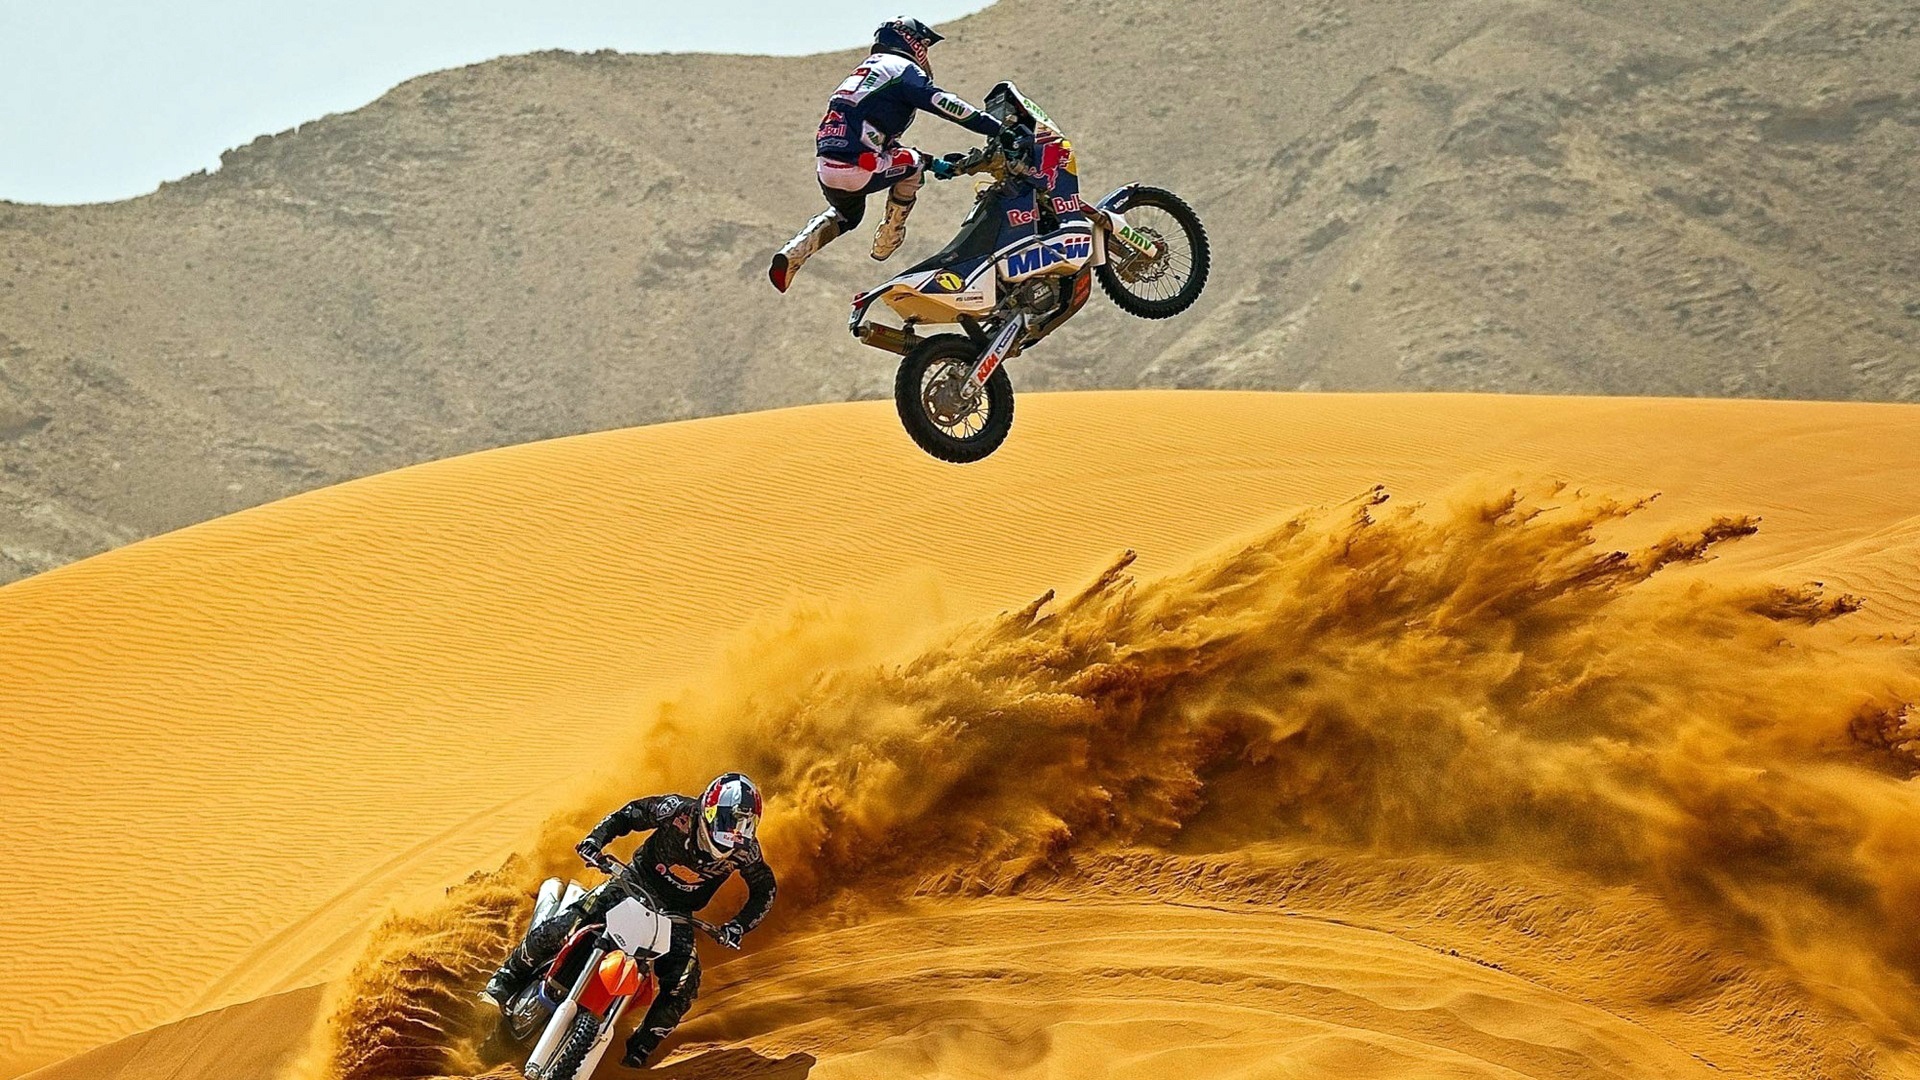 Sport Bikes Stunt In Desert Sand - Dubai Dirt Bike - HD Wallpaper 